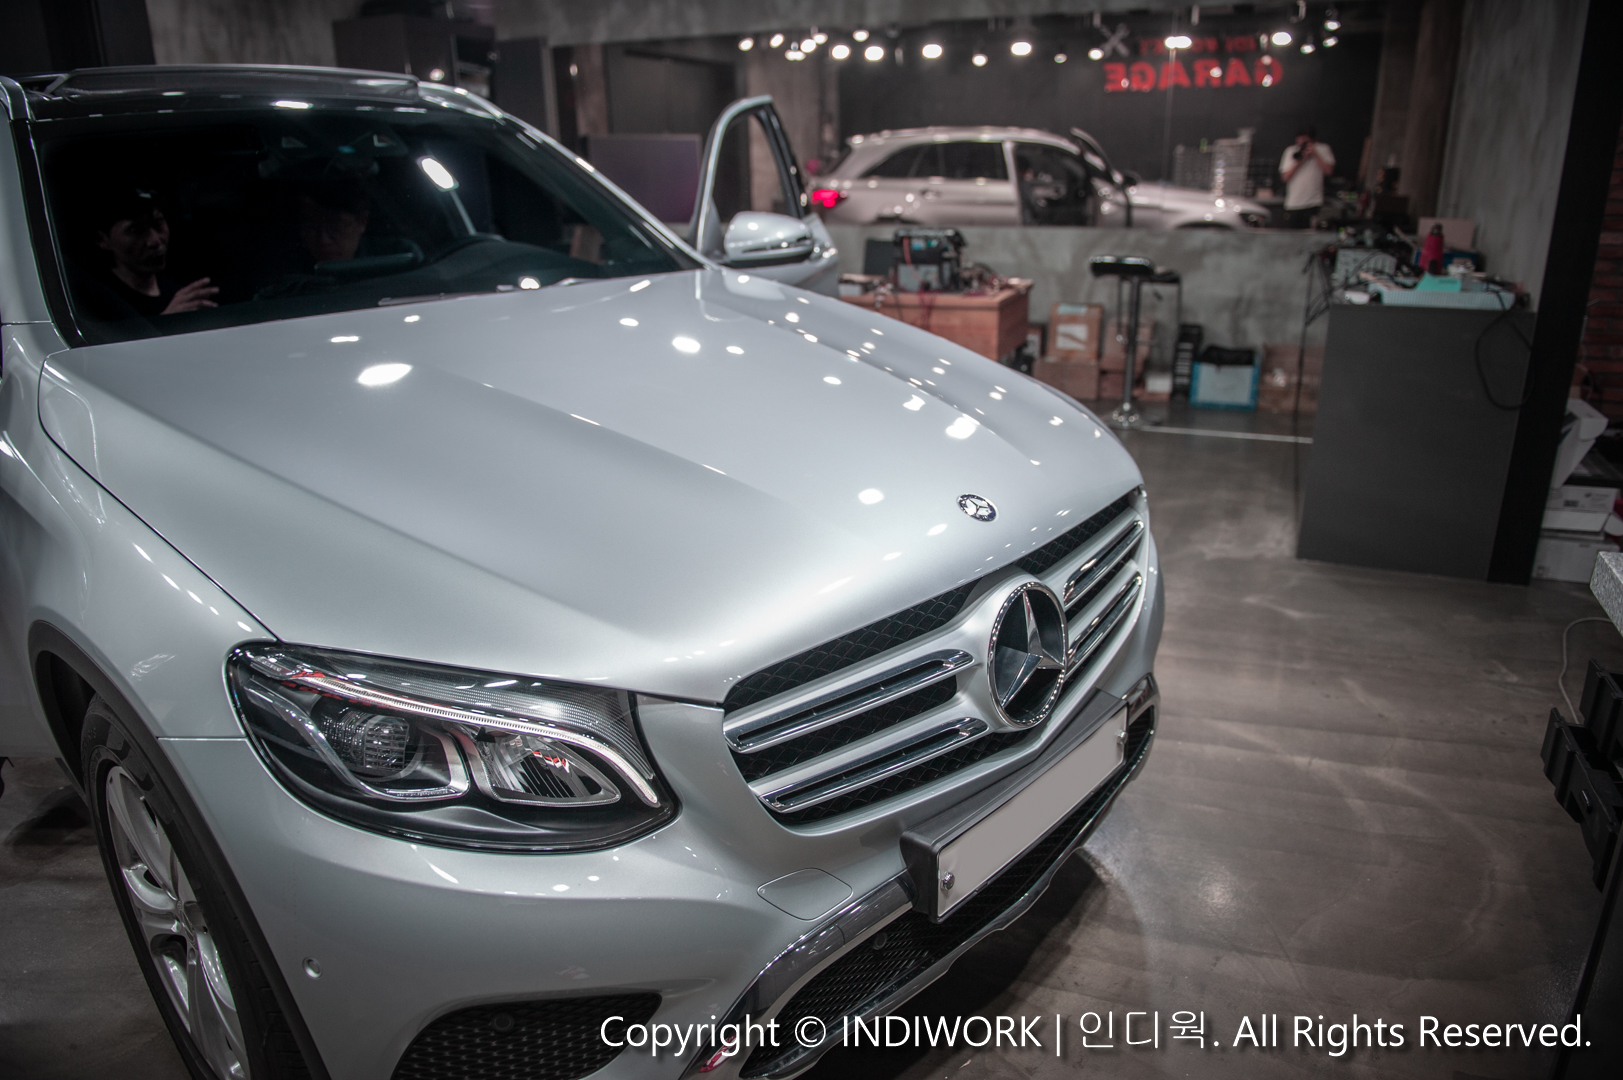 Mercedes-Benz 2017 GLC-Class exterior